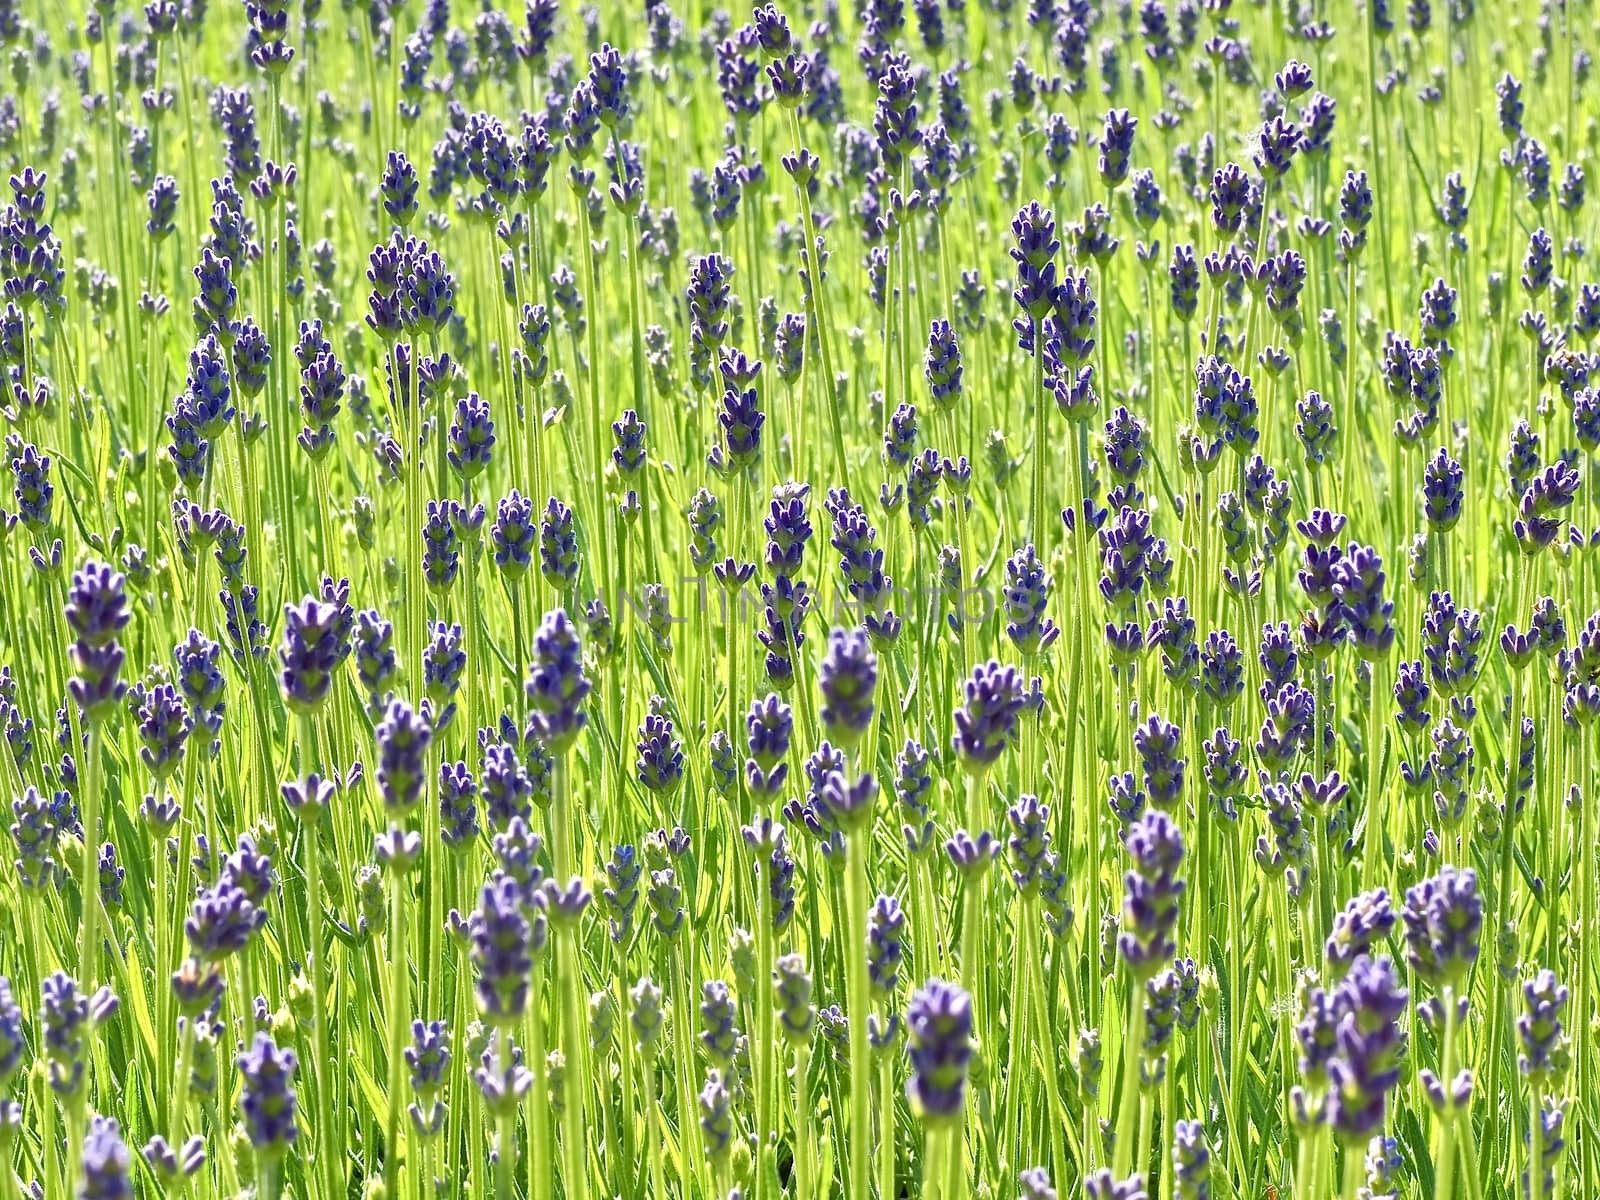 Macro of a blooming lavender field